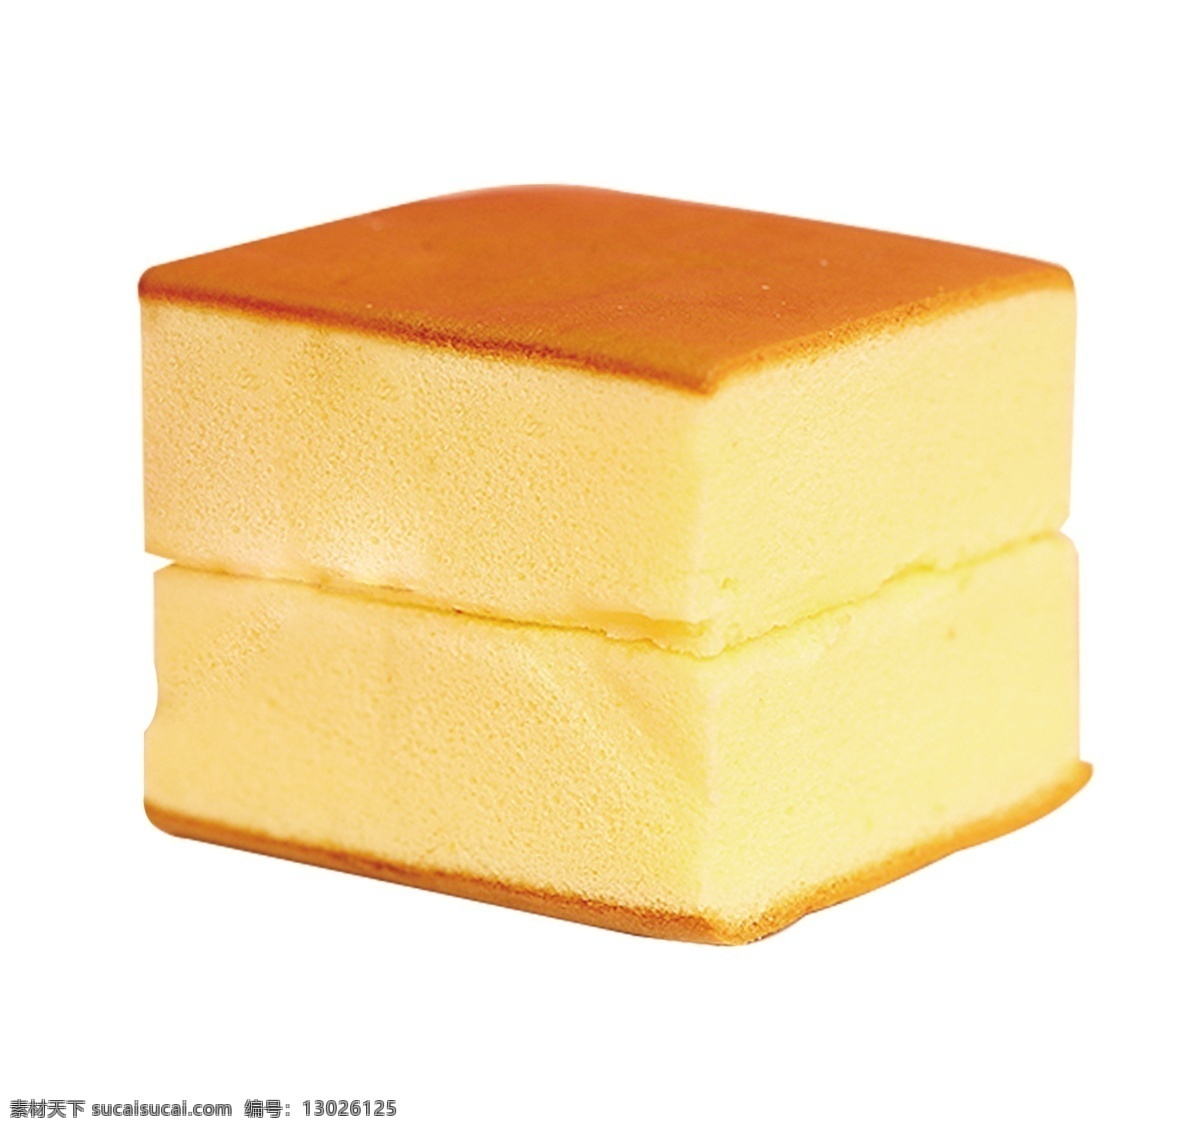 纯蛋糕 长崎蛋糕 北海道蛋糕 牛奶面包 乳酸菌 分层